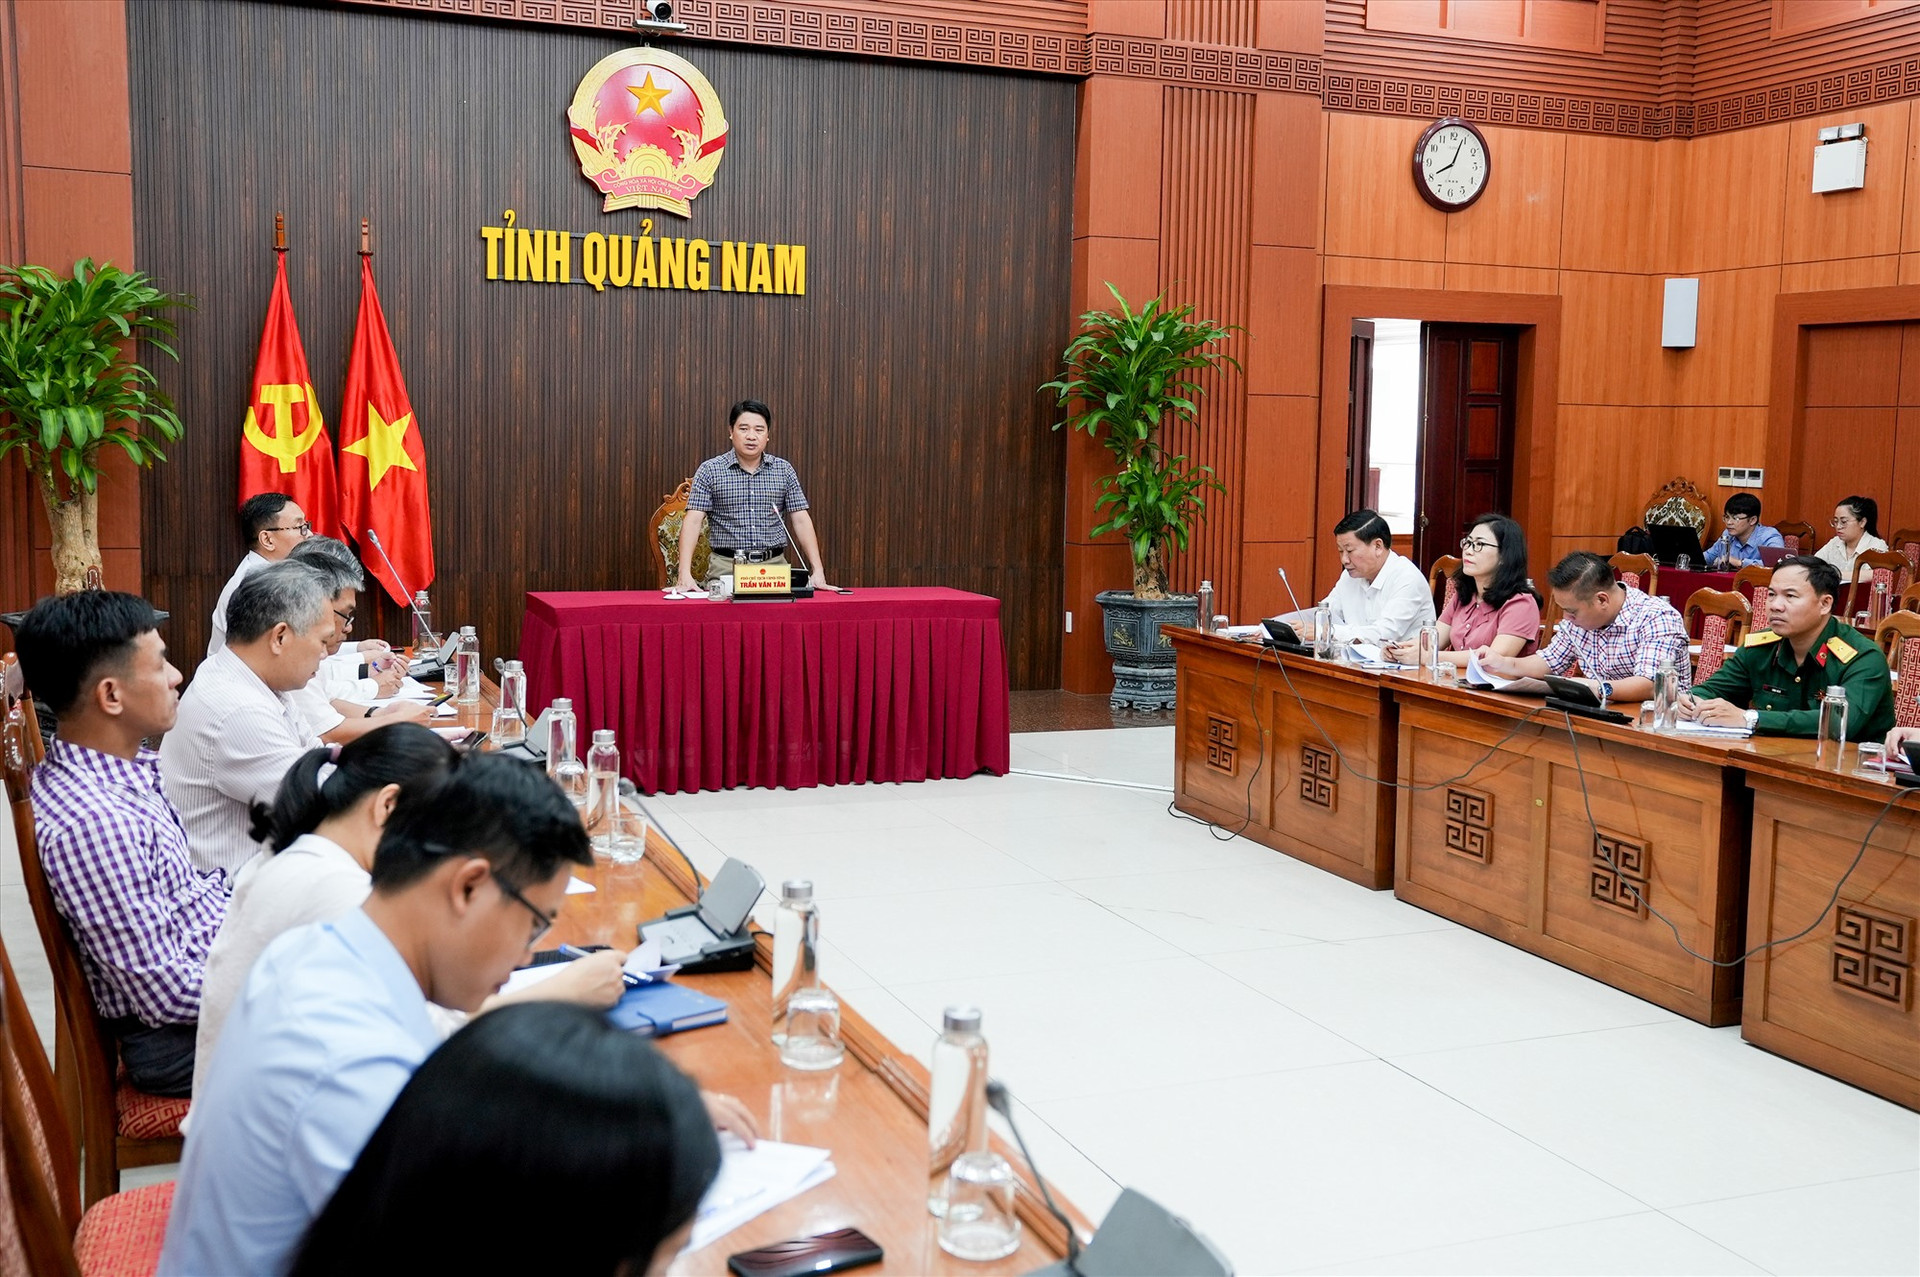 Phó Chủ tịch UBND tỉnh Trần Văn Tân kết luận hội nghị. Ảnh: H.Q